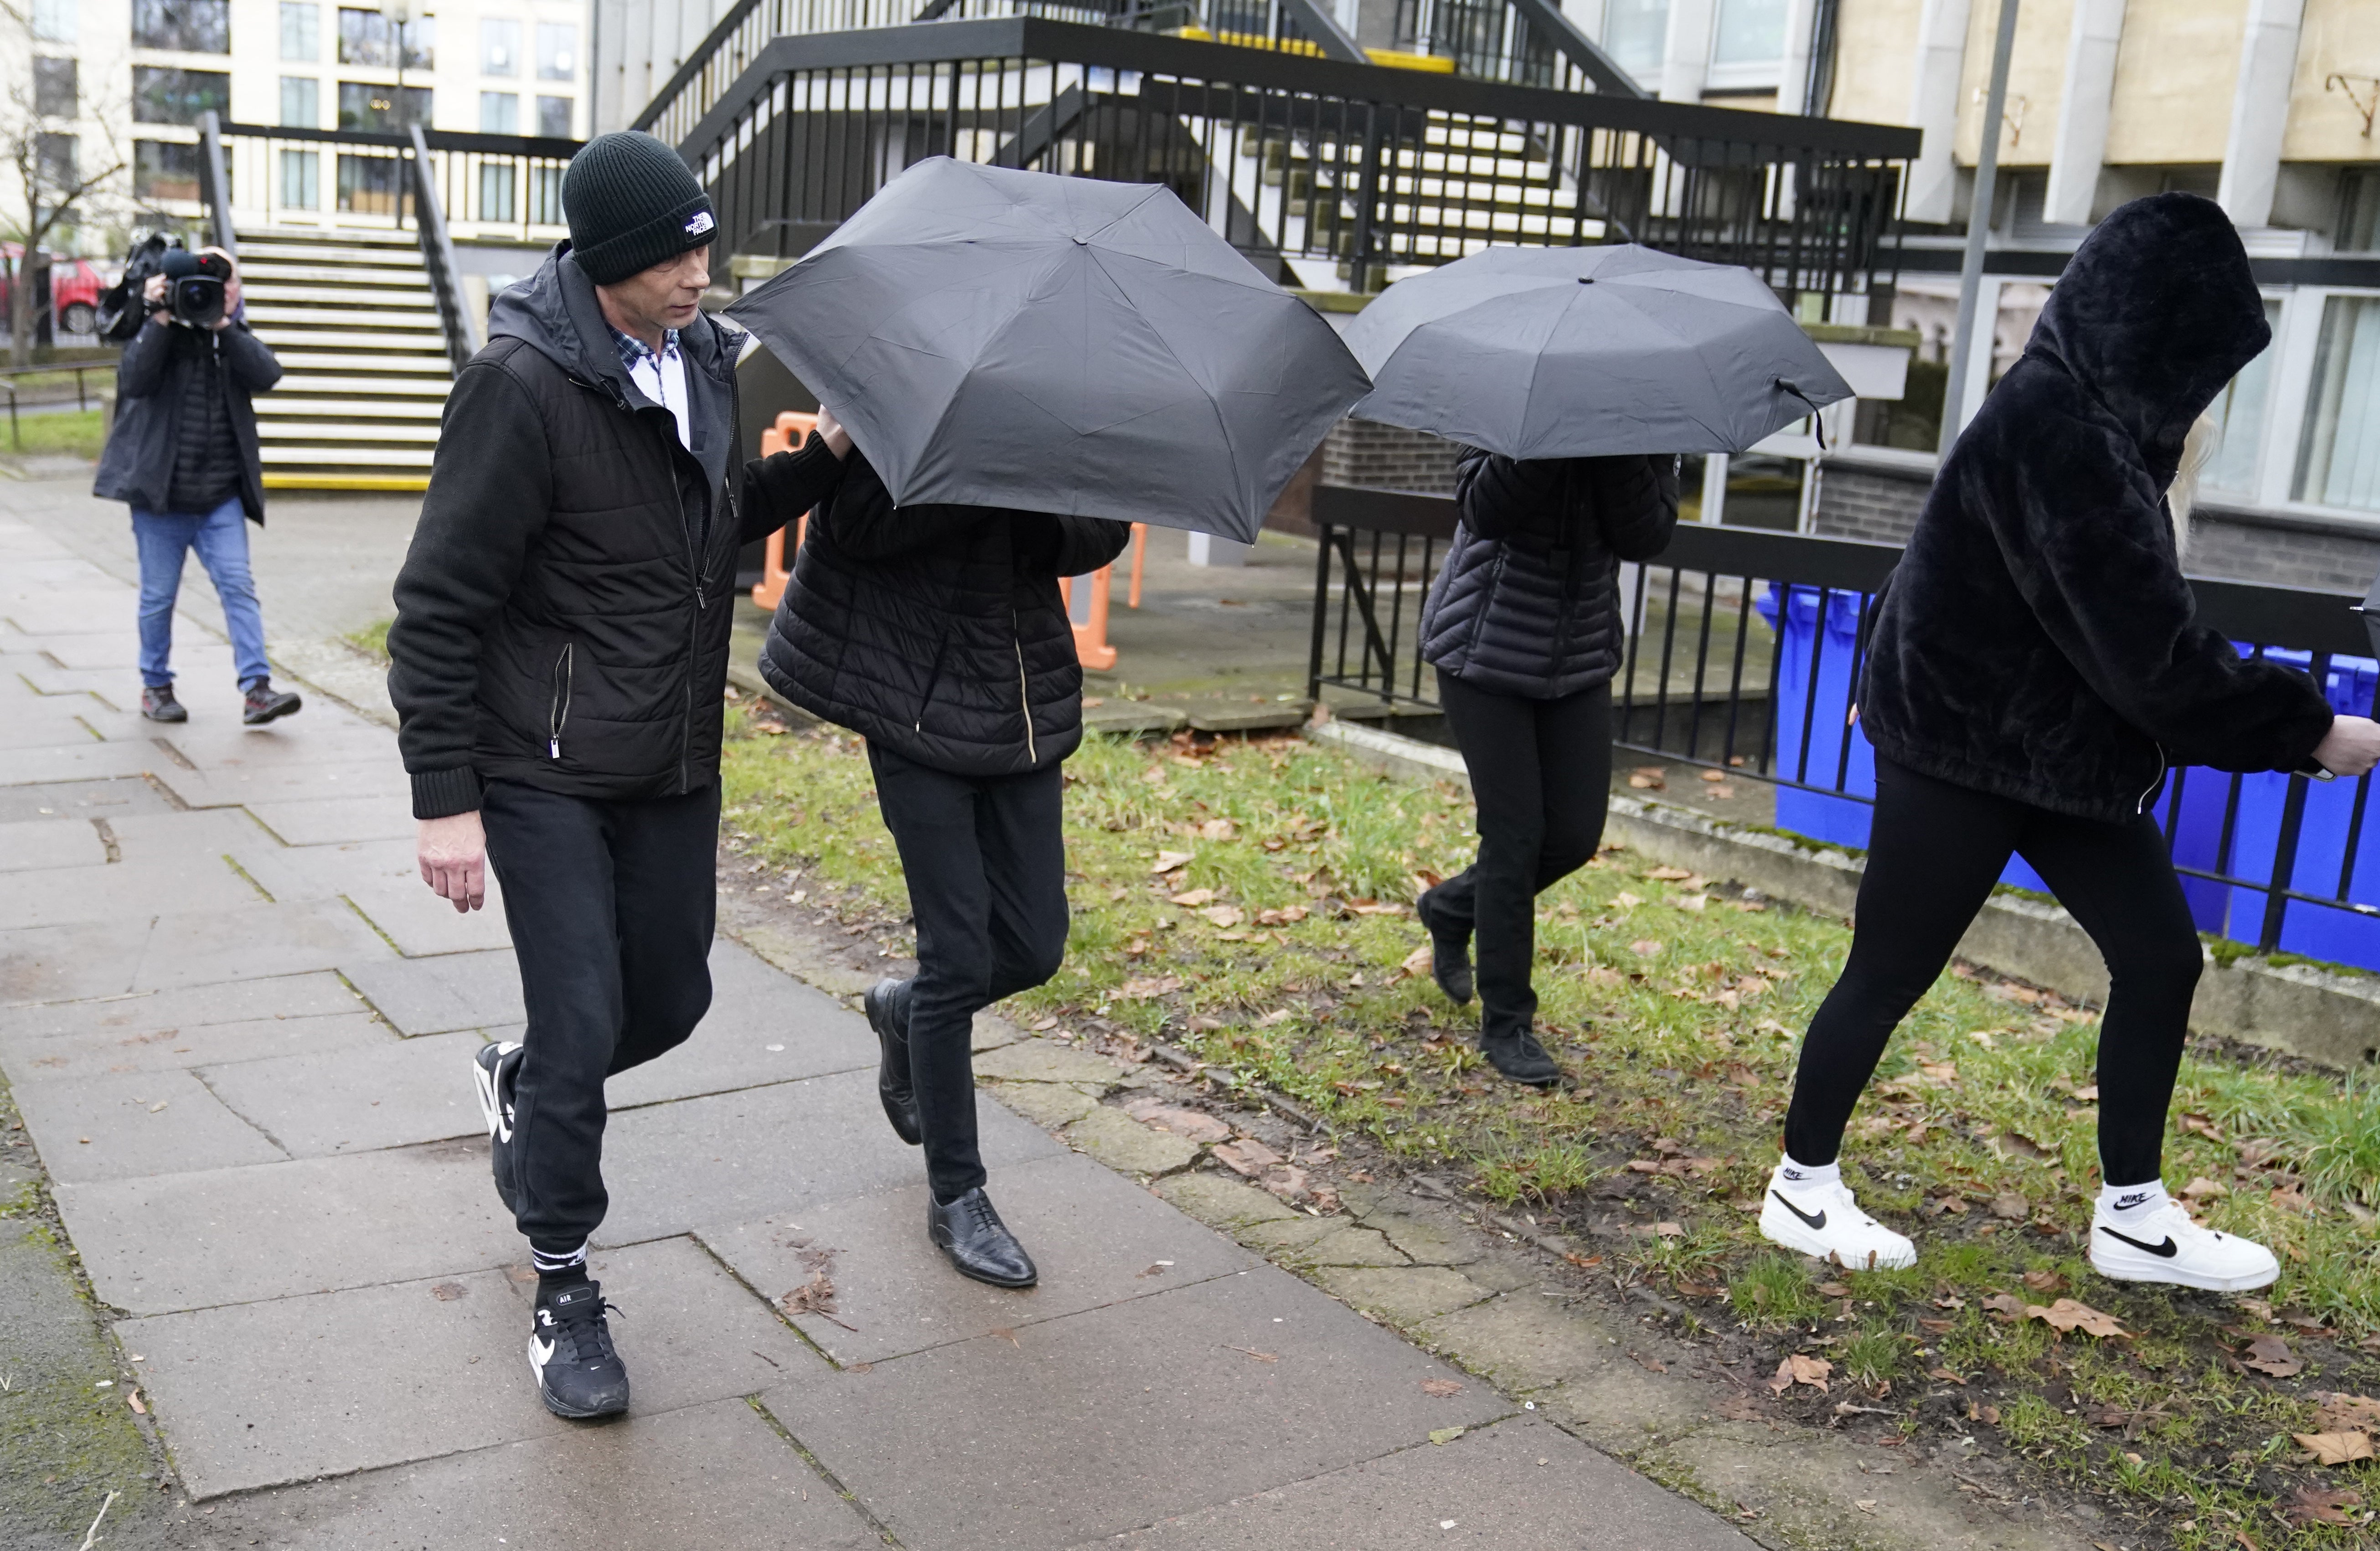 Elliot Benham, 25, (second left under umbrella) and Sophie Harvey, 25, (second right under umbrella), at an earlier hearing at Cheltenham Magistrates’ Court